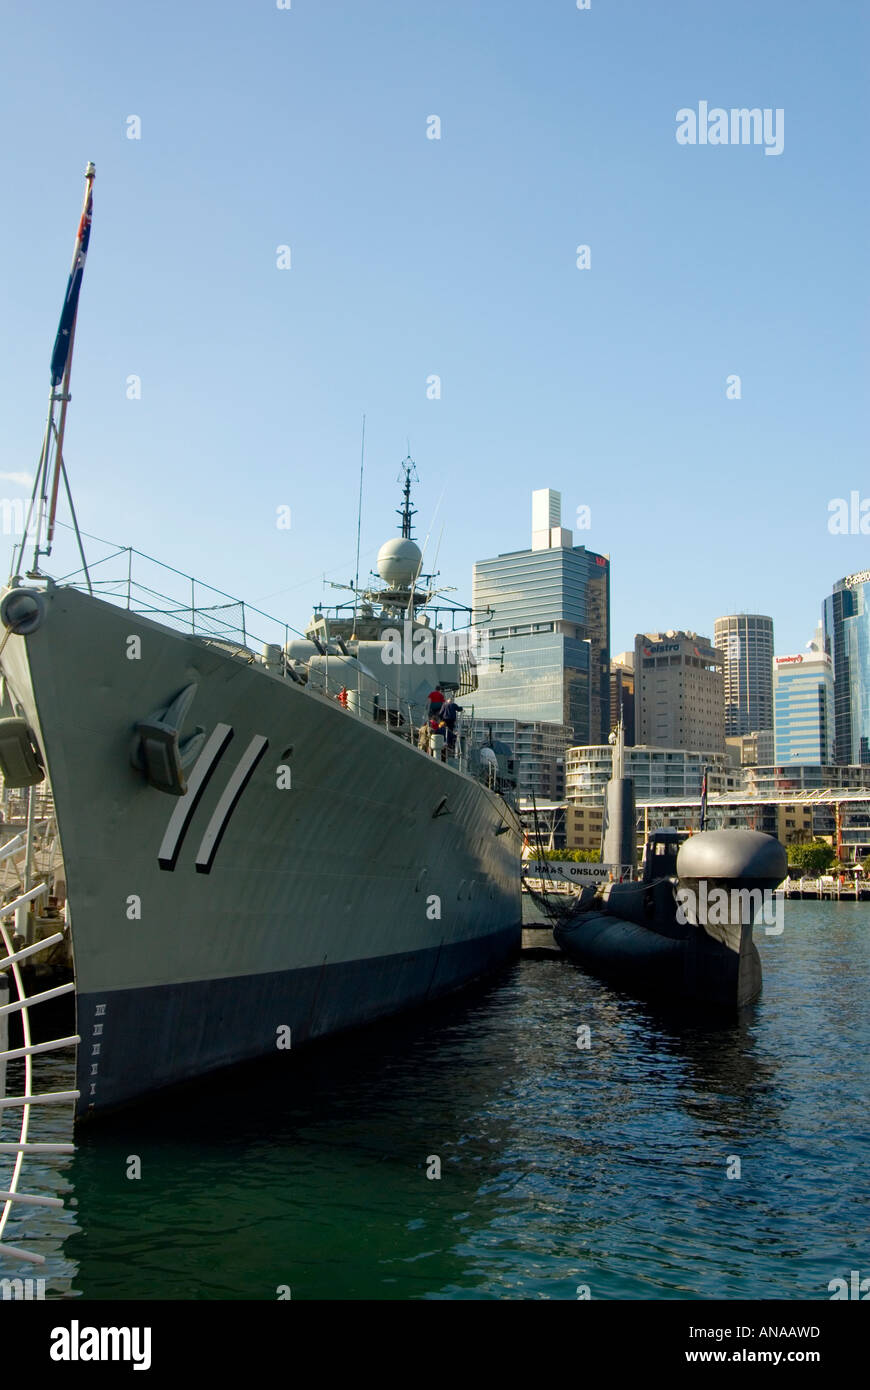 HMAS Vampire HMAS Onslow warship in Sydney Harbor Stock Photo